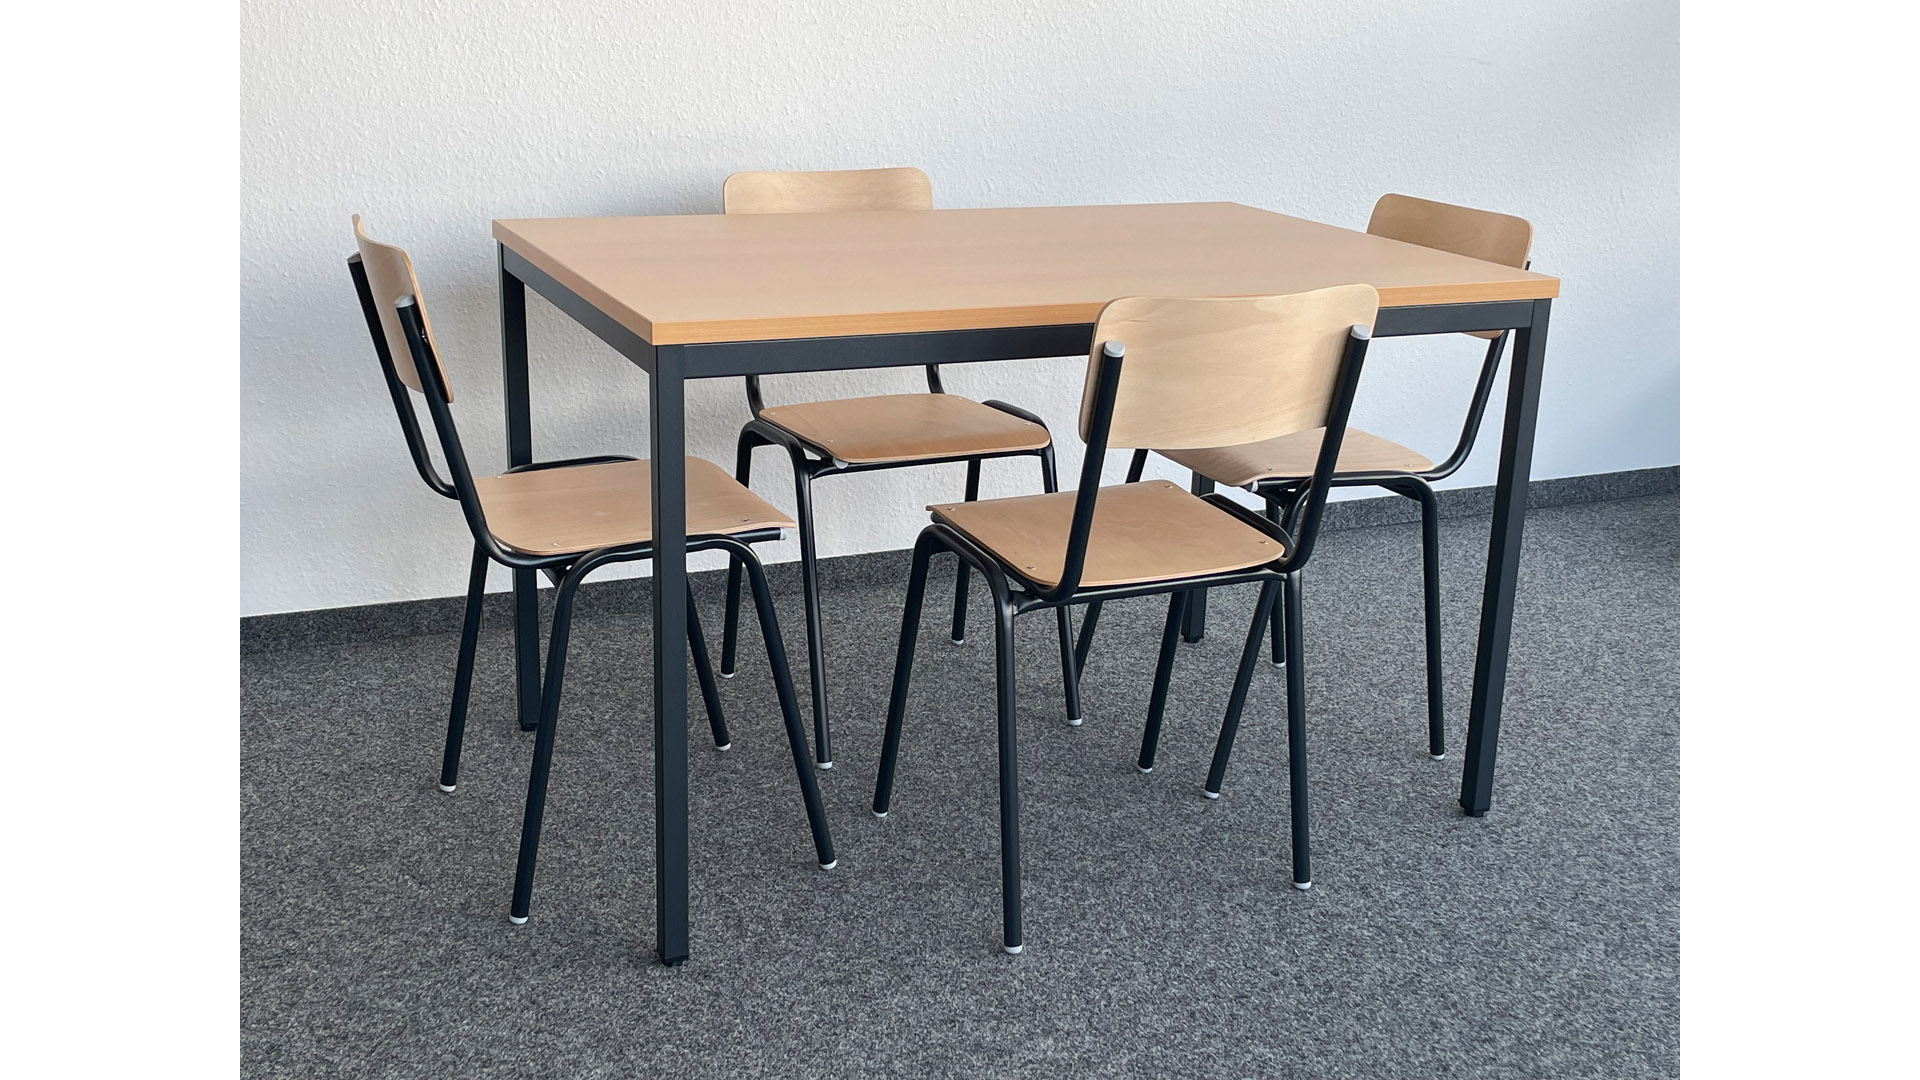 Tisch-Stuhl-Set, bestehend aus 4 Stapelstühlen und 1 Tisch 1200 mm breit, Gestell schwarz, Sitz/Rücken Buche, Tischplatte buche